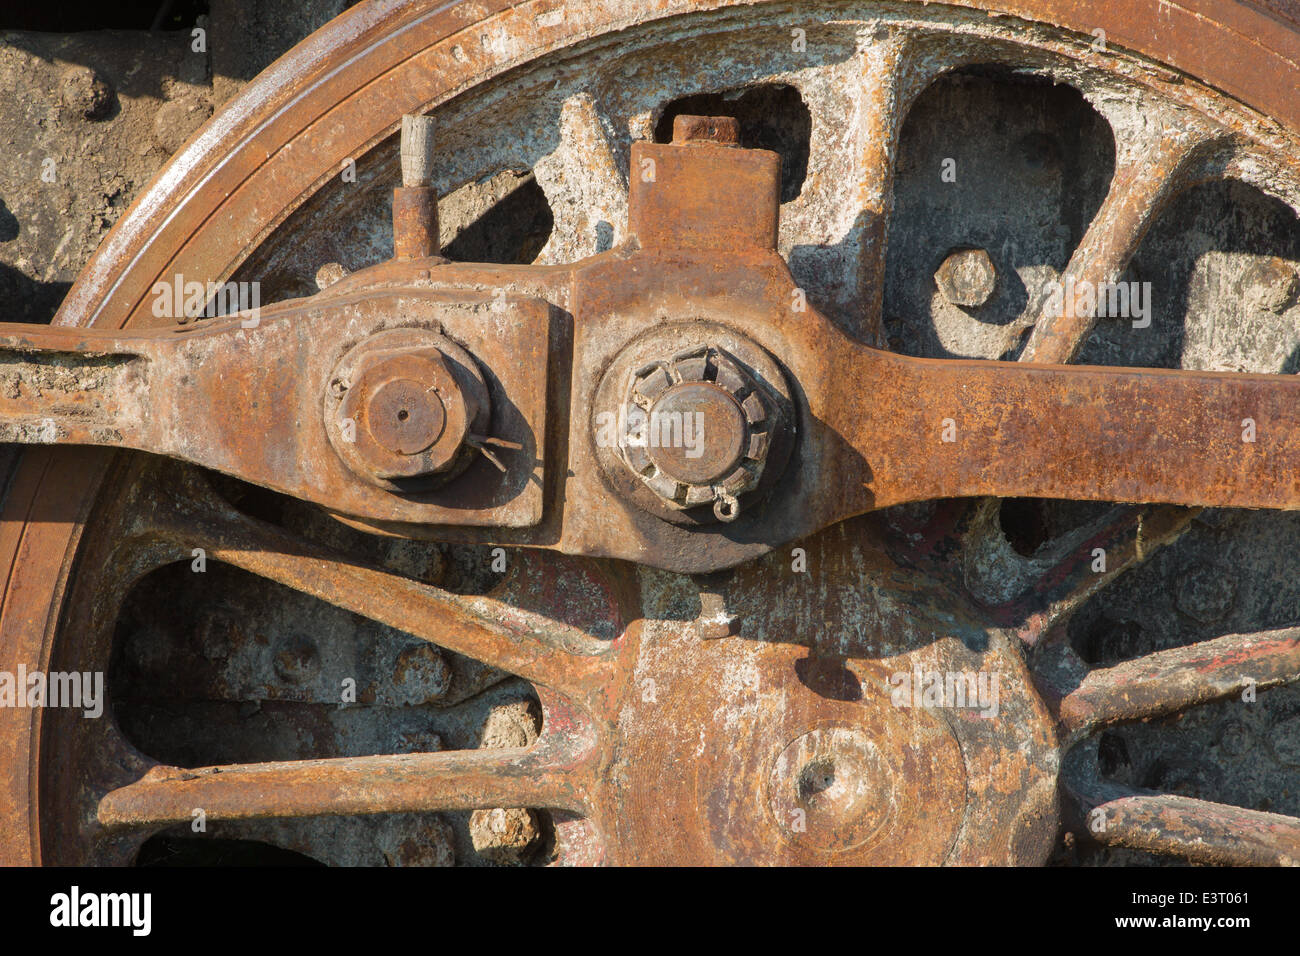 Dettaglio dell'asta di azionamento del meccanismo sulla vecchia locomotiva a vapore in ruggine Foto Stock